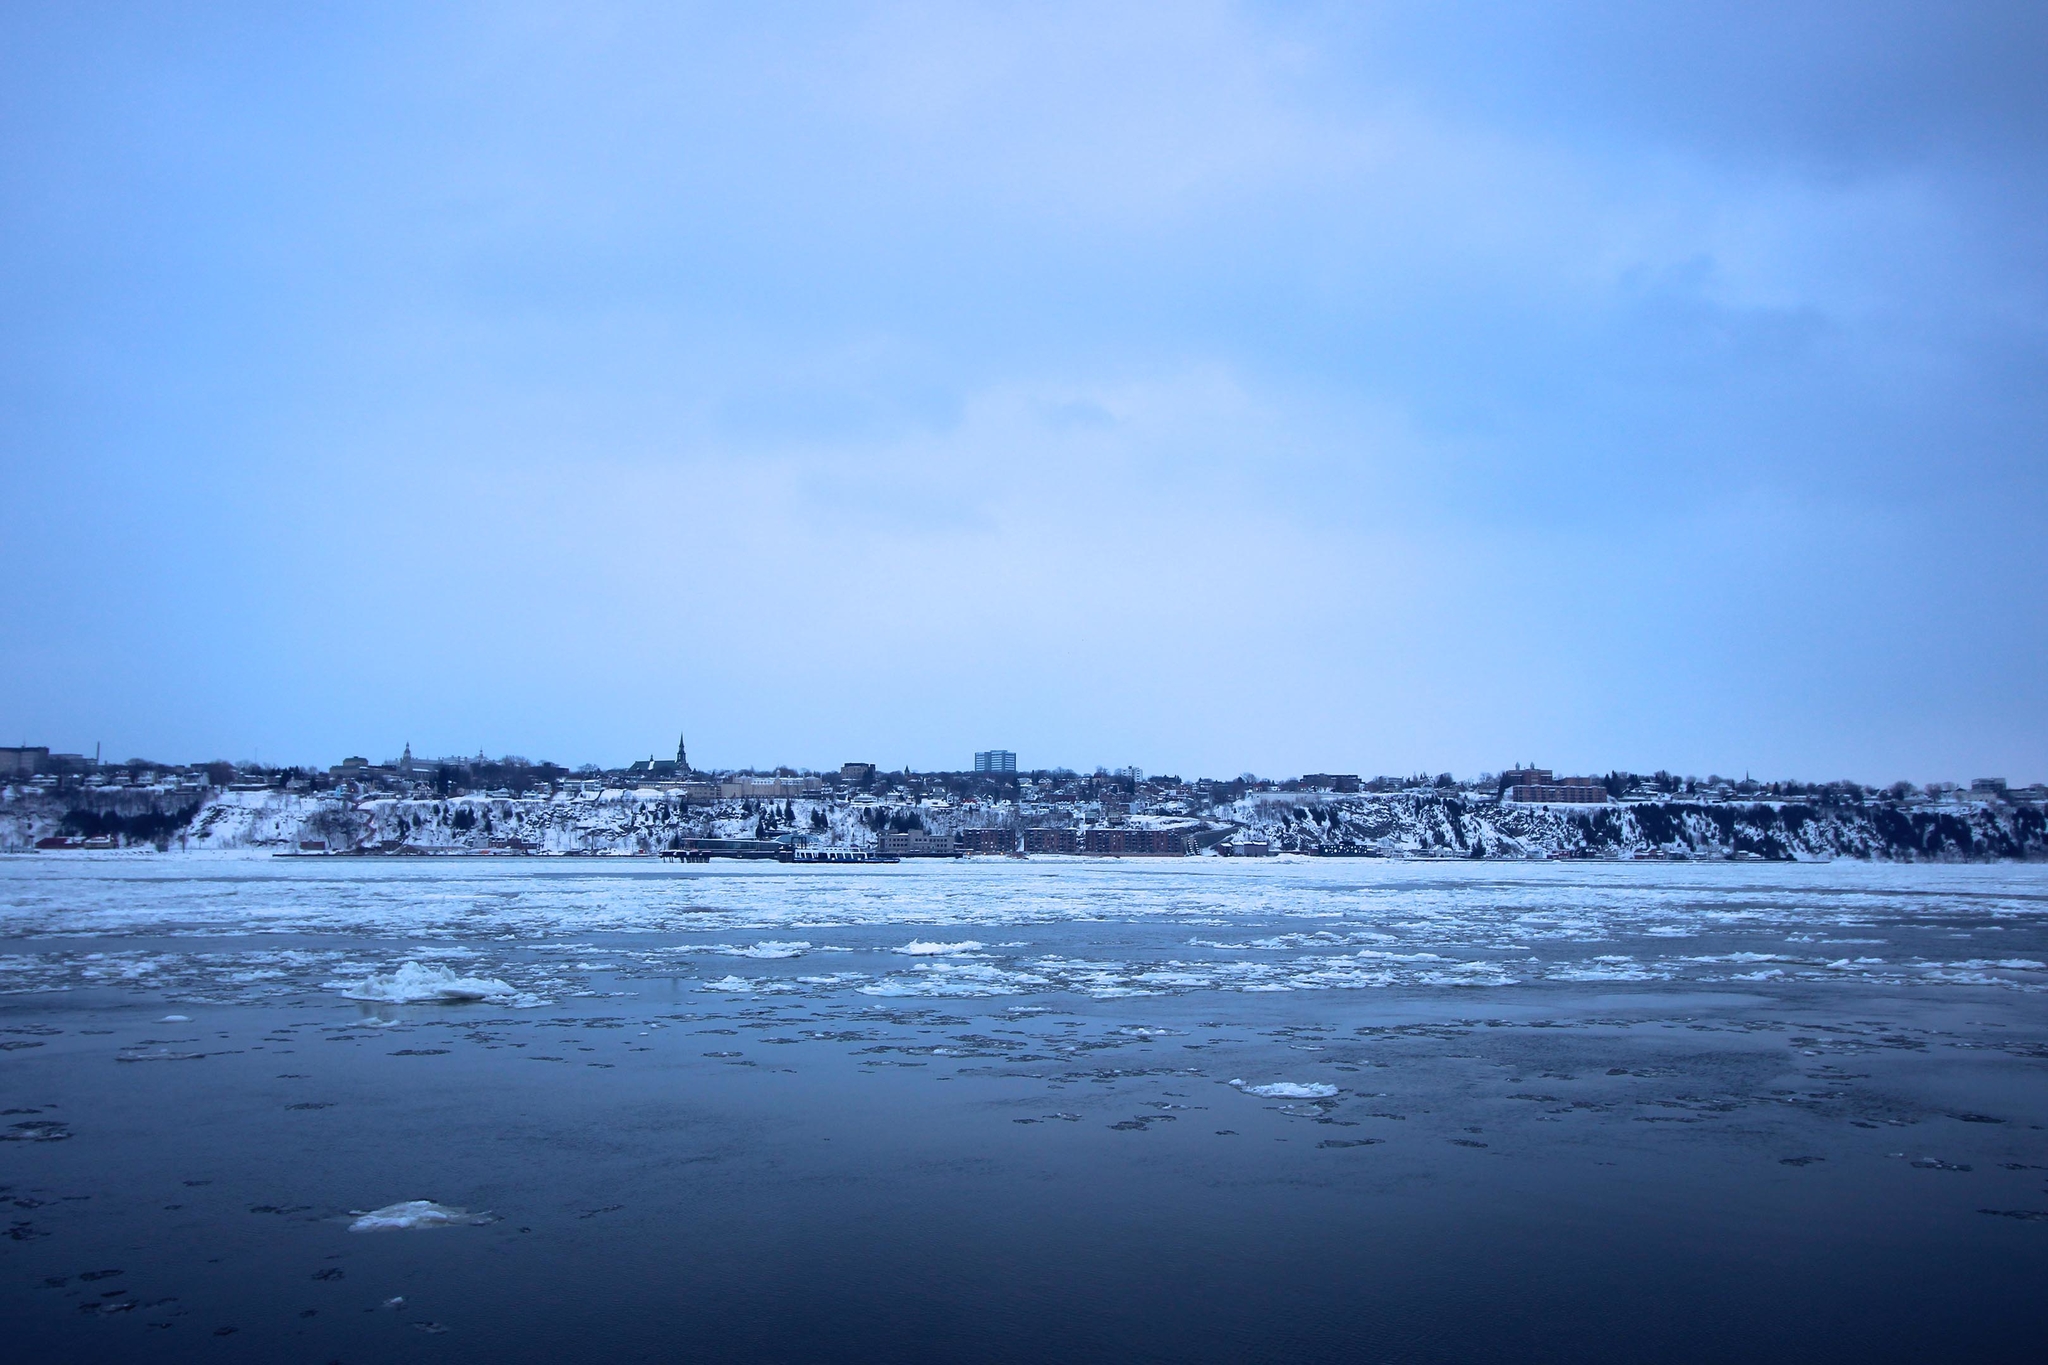 Rive gelée à Québec city pendant l'une des plus belles saisons du Québec